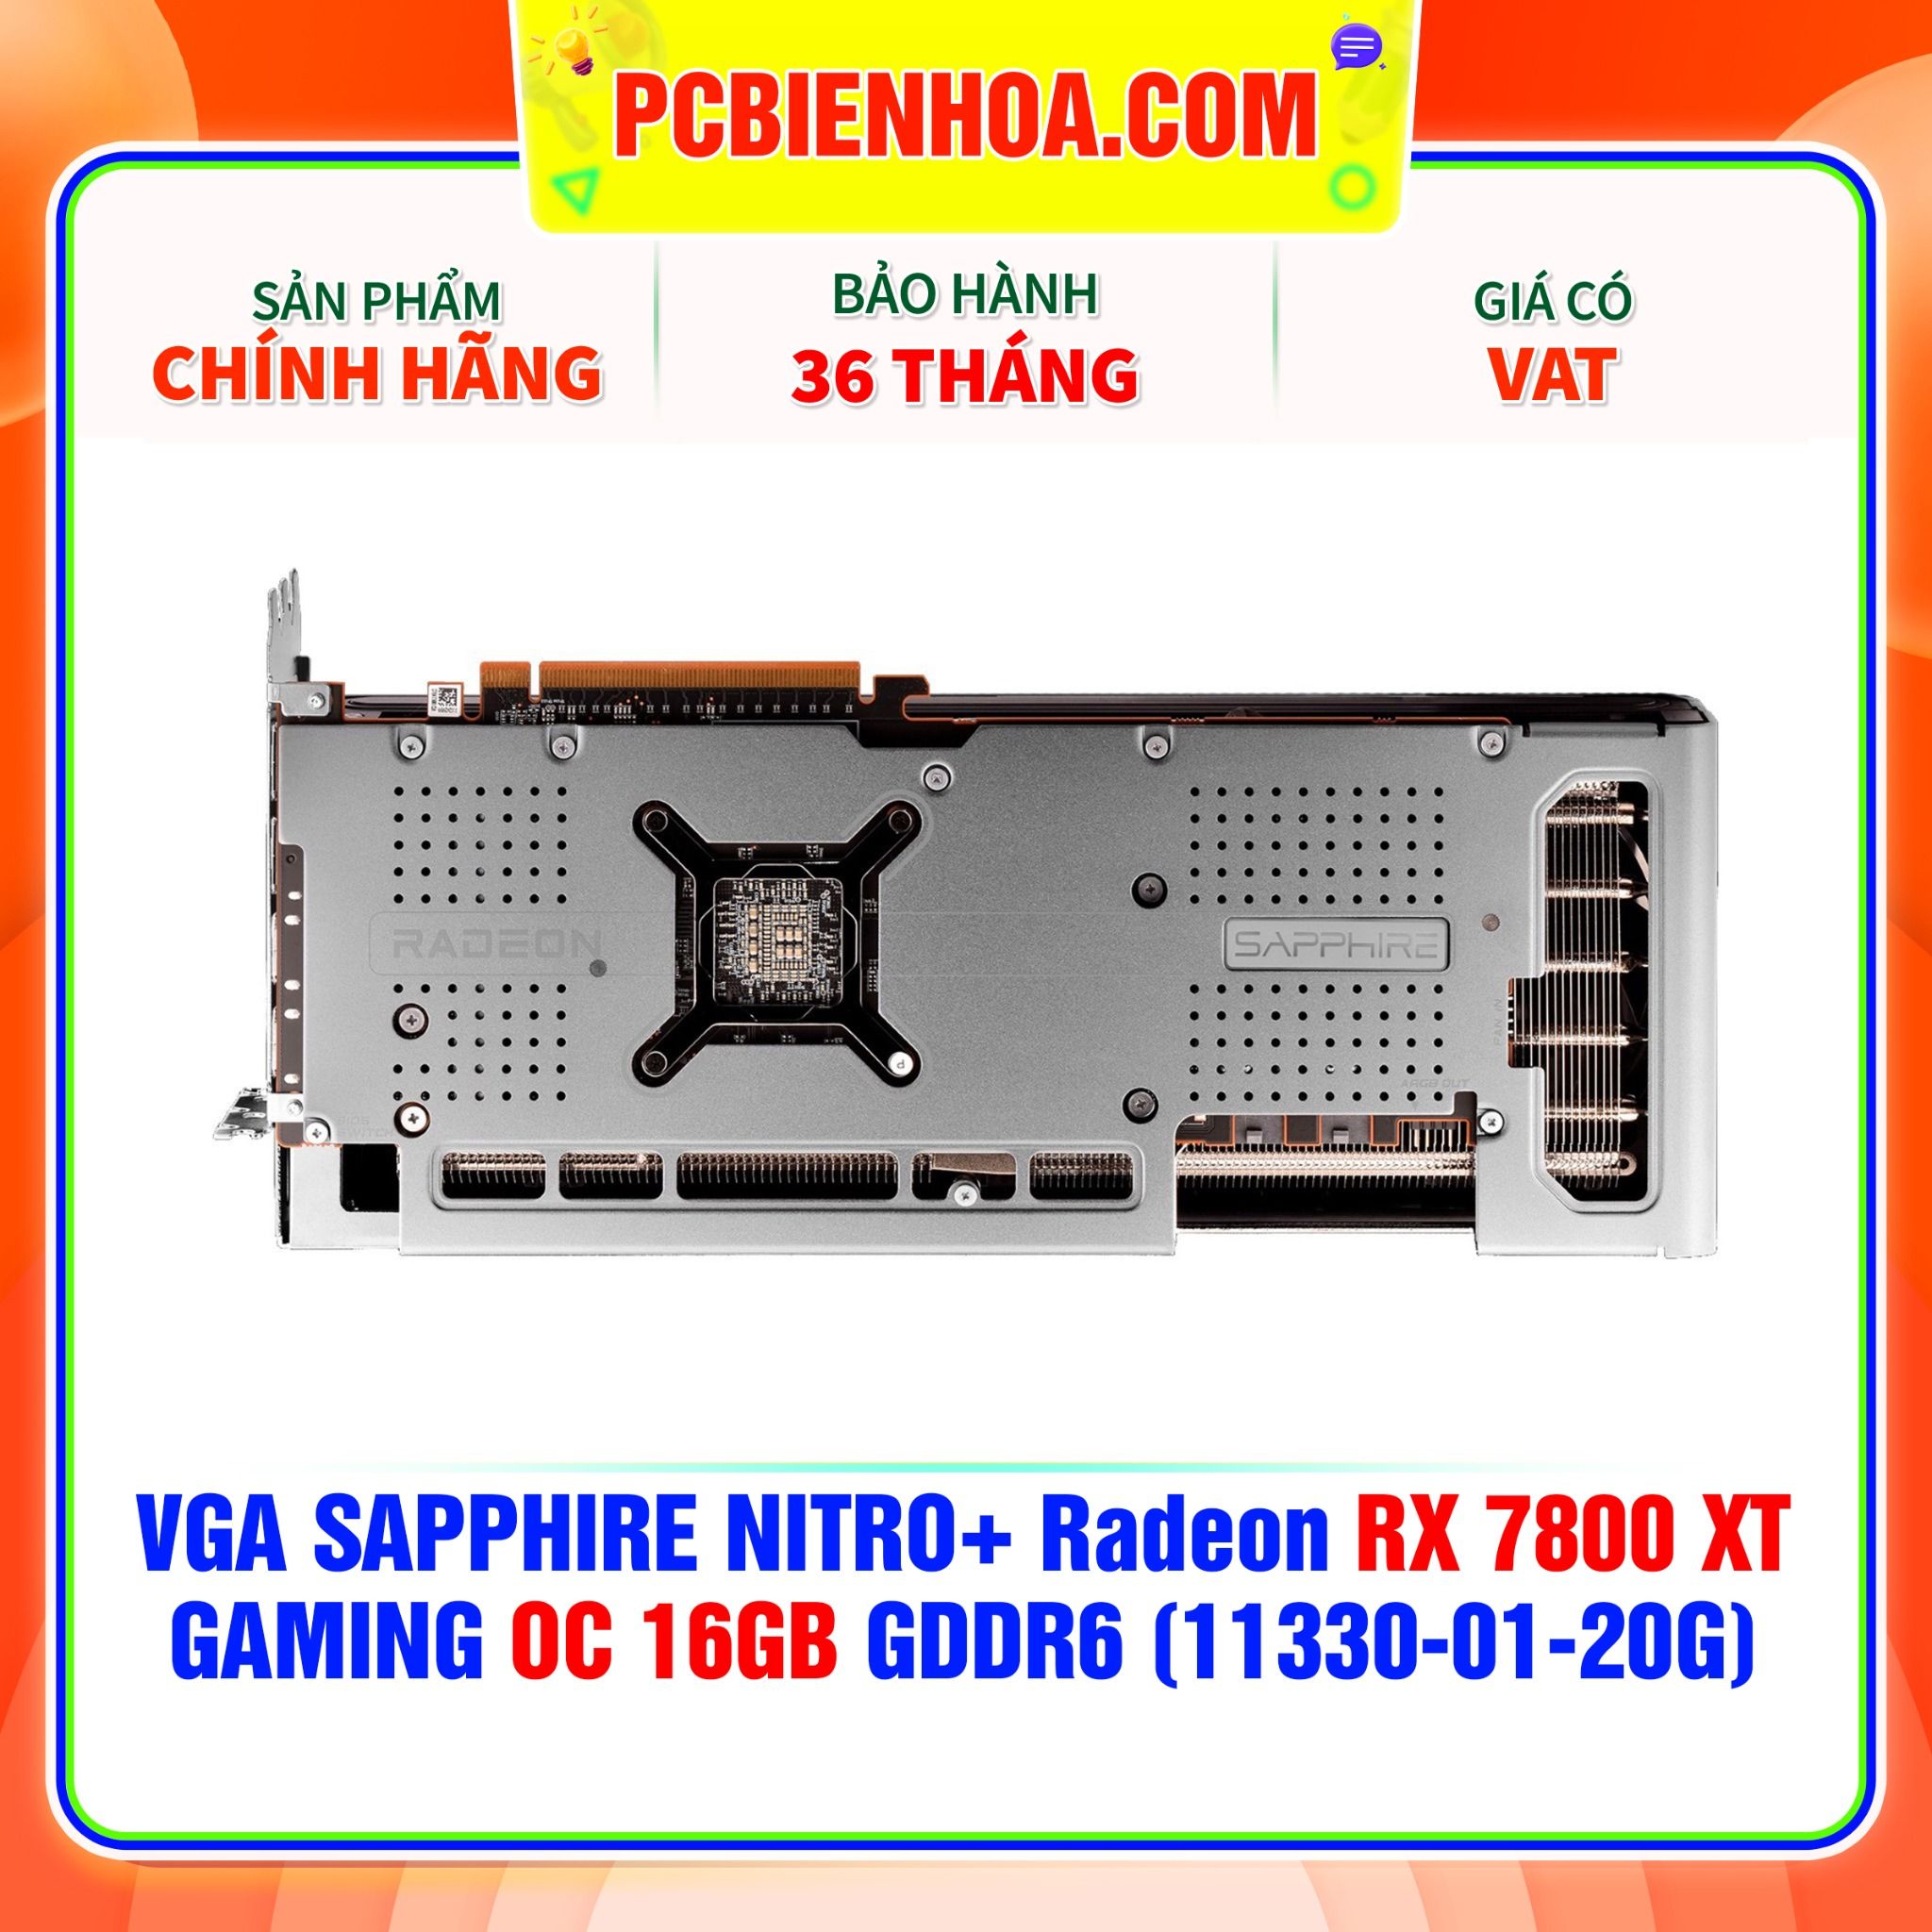  VGA SAPPHIRE NITRO+ Radeon RX 7800 XT GAMING OC 16GB GDDR6 (11330-01-20G) 